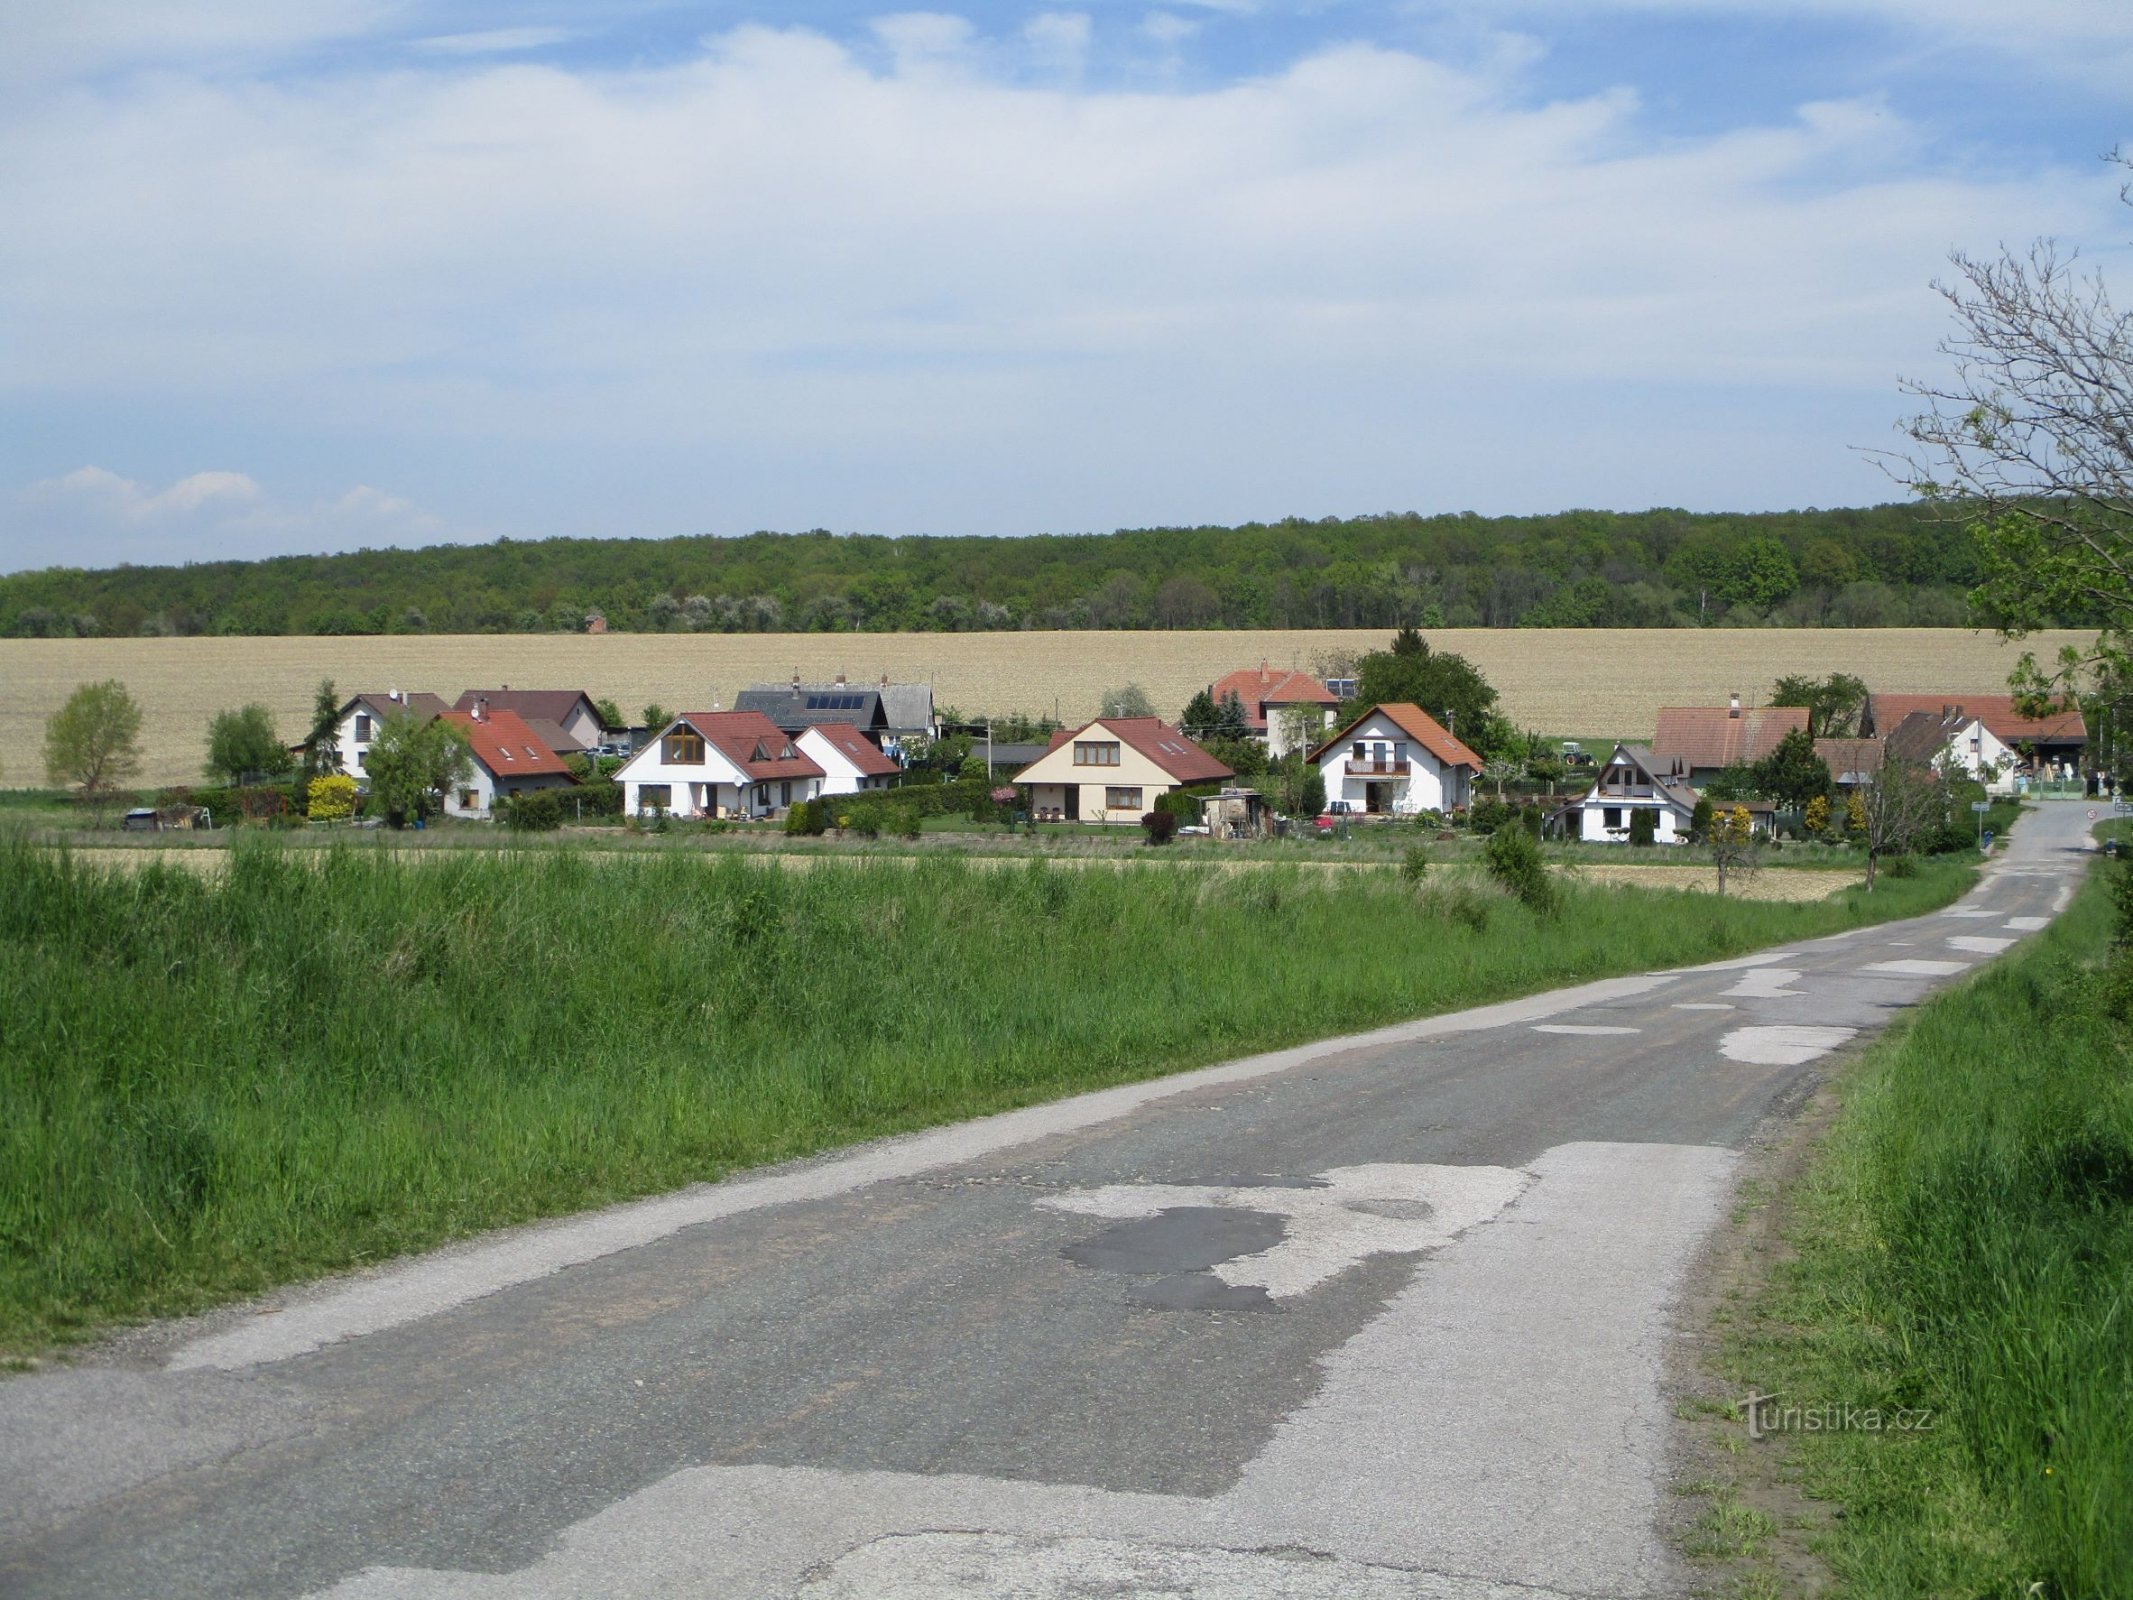 Čisteves de pe drumul de la Horní Dohalice (8.5.2020)